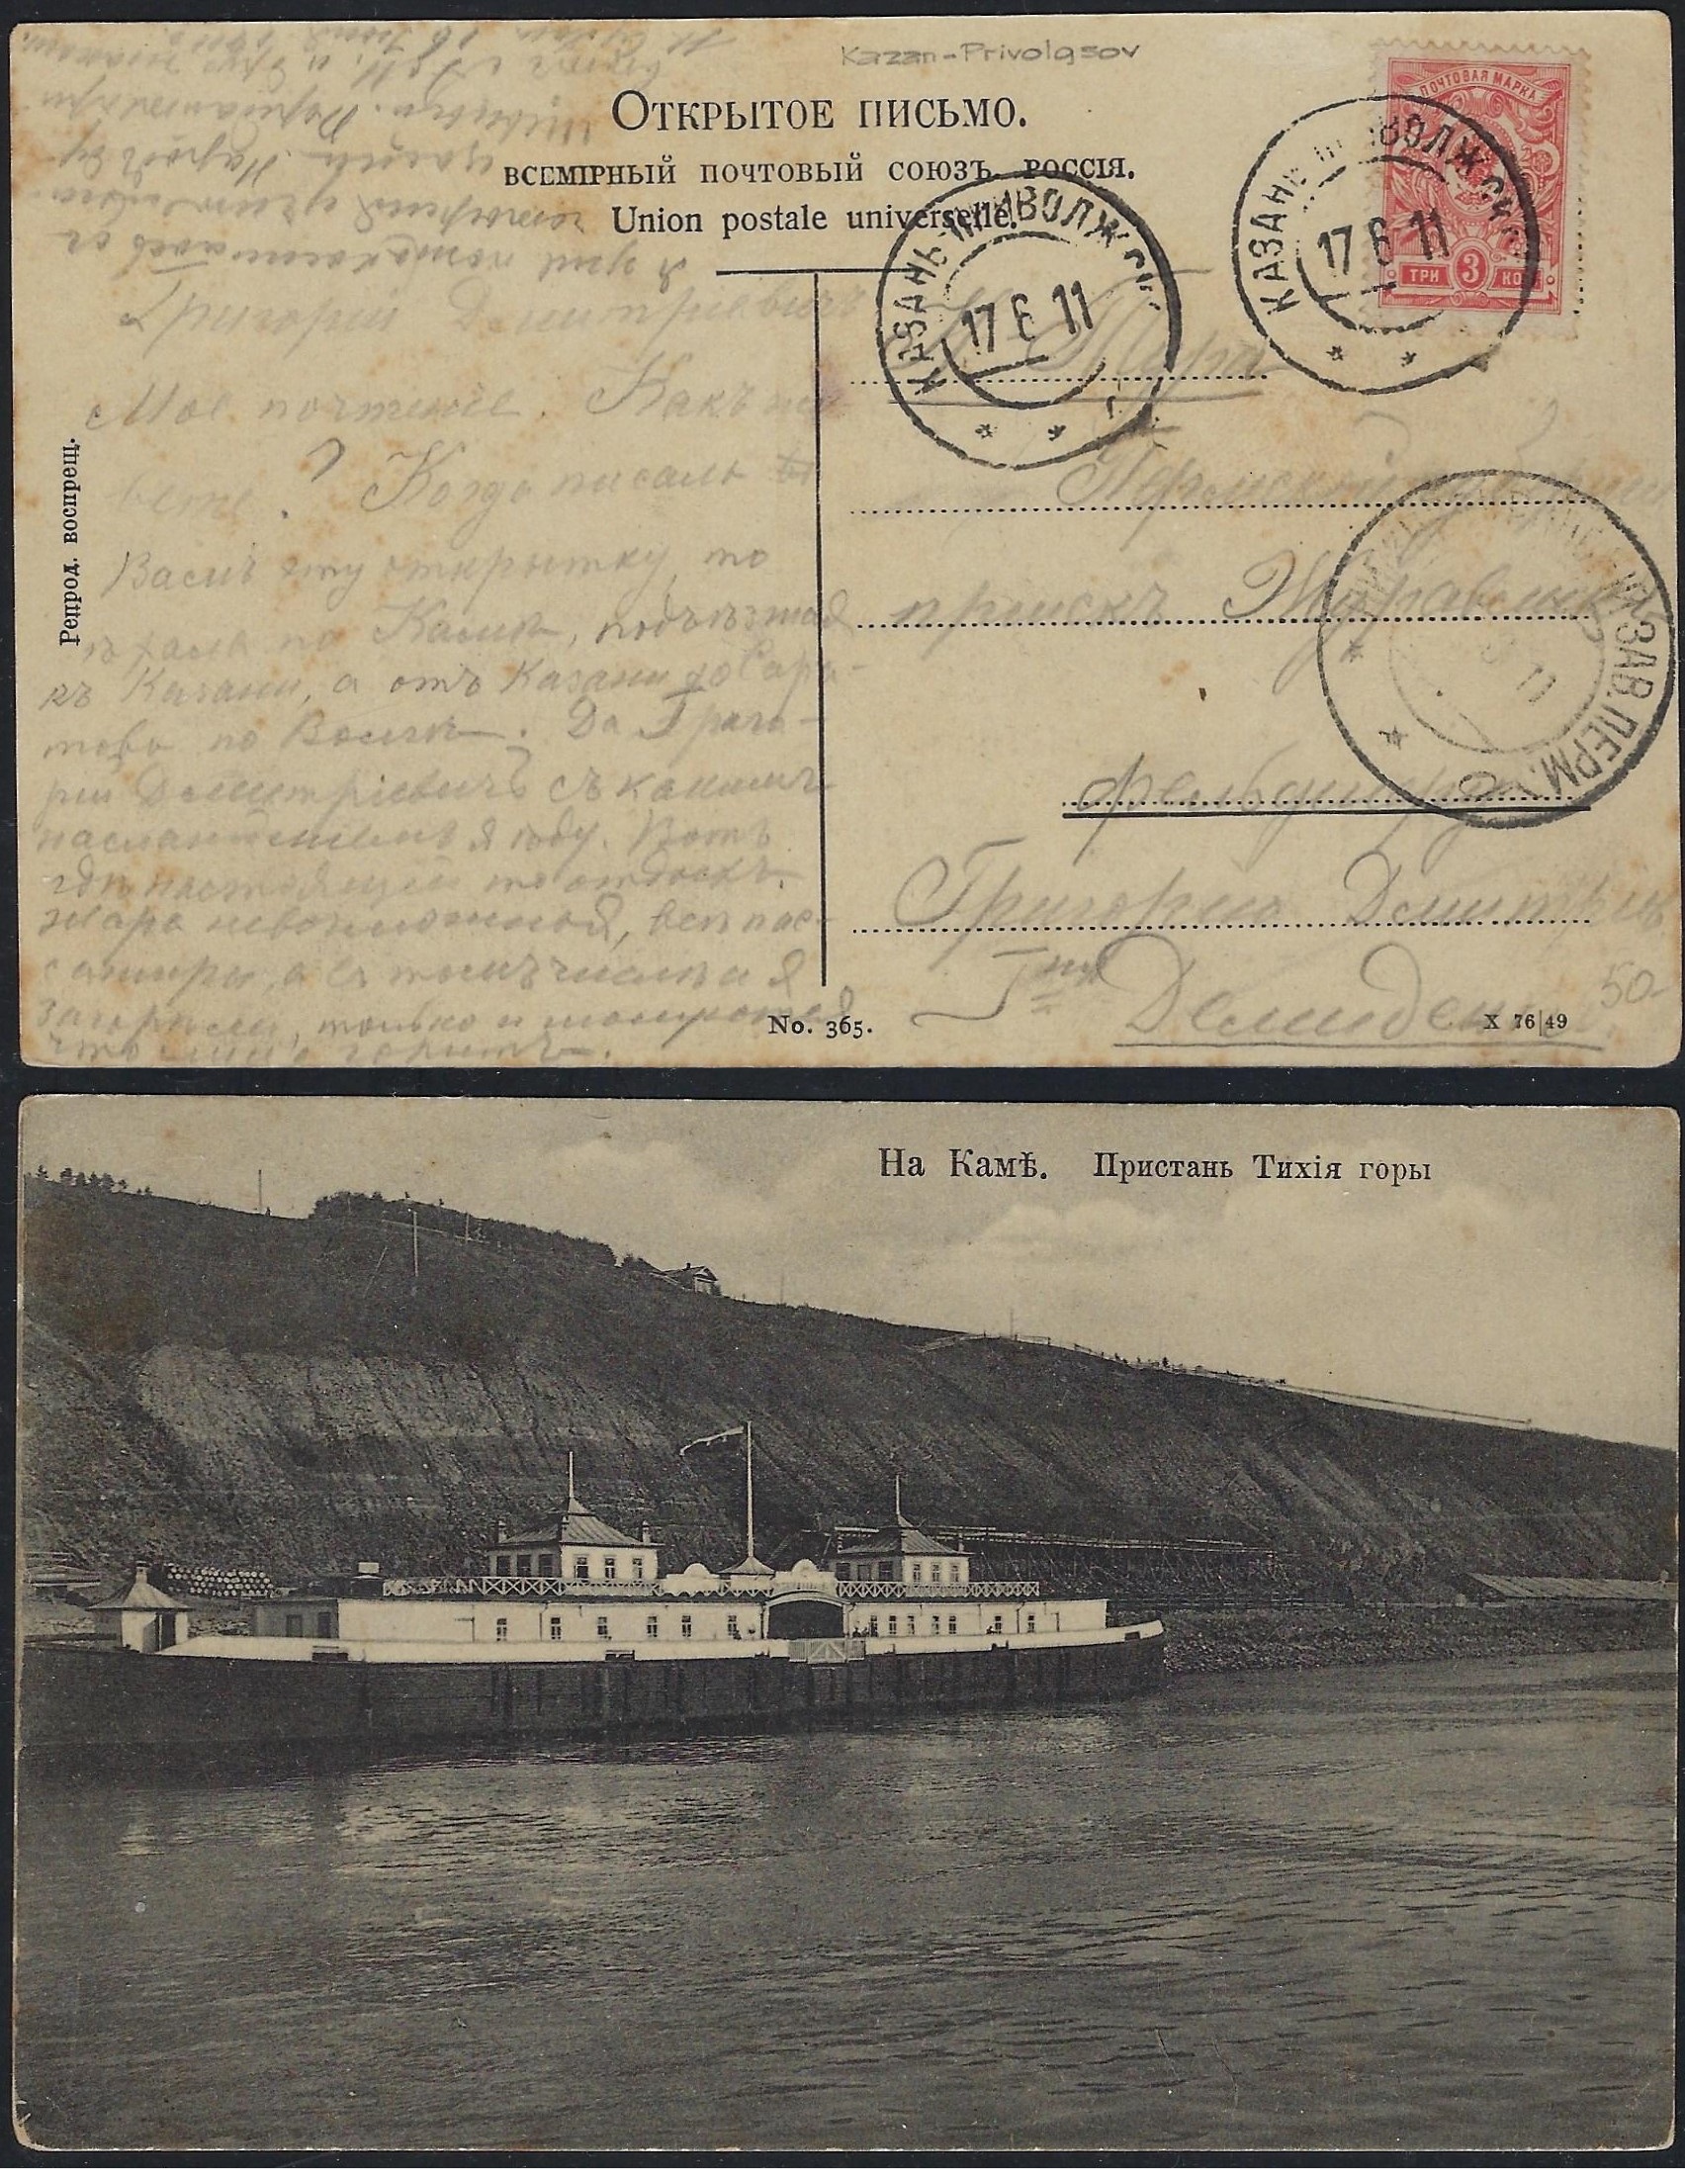 Russia Postal History - Postmarks nizneturanskij zav Scott 101911 